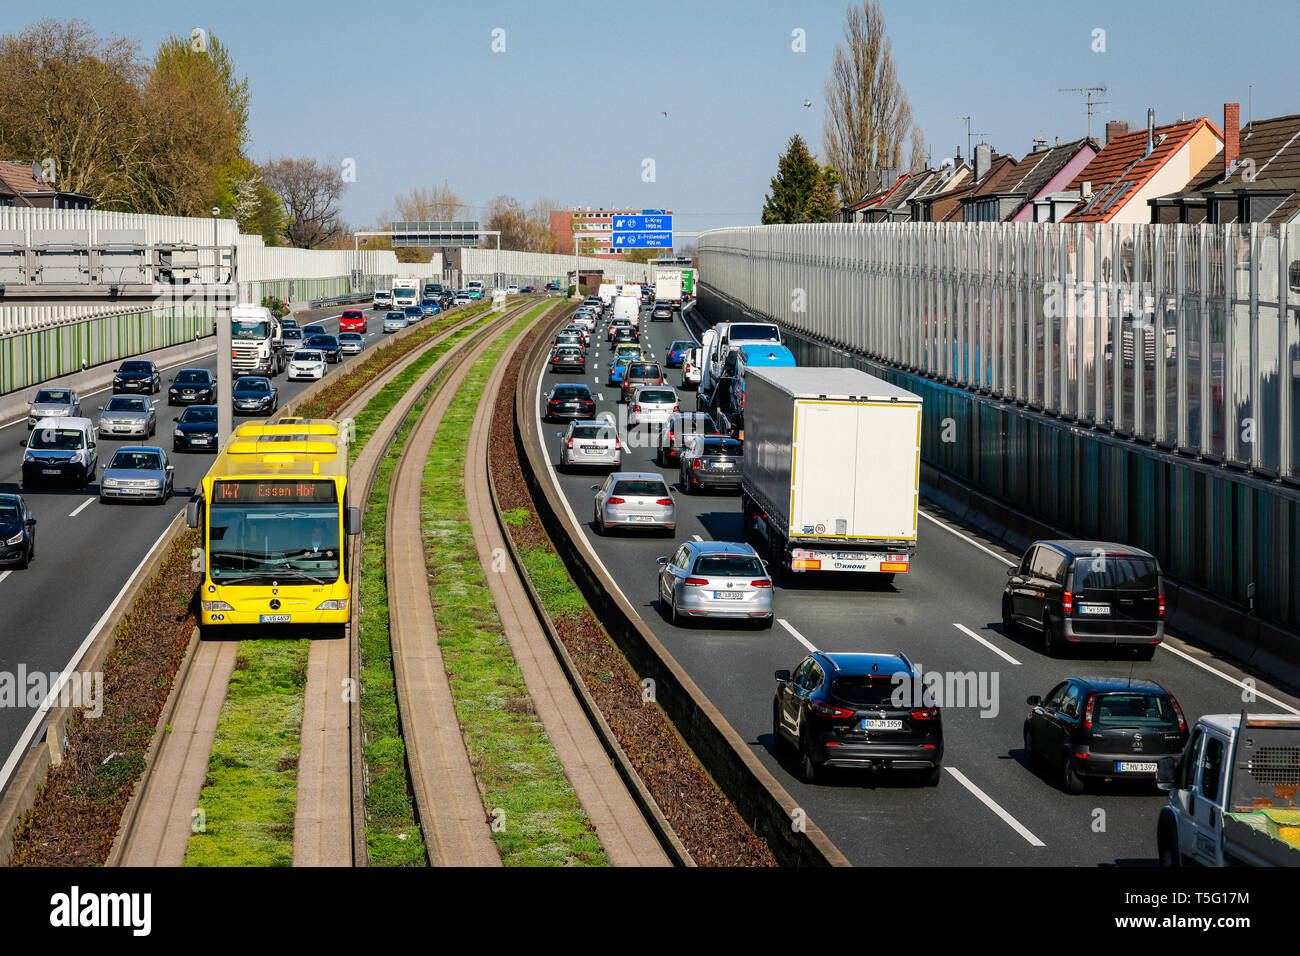 Essen, Ruhrgebiet, Nordrhein-Westfalen, Deutschland - berufsverkehr auf der Autobahn A40, Auto- und Busverkehr, eine Lärmschutzwand reduziert Geräusche pollu Stockfoto